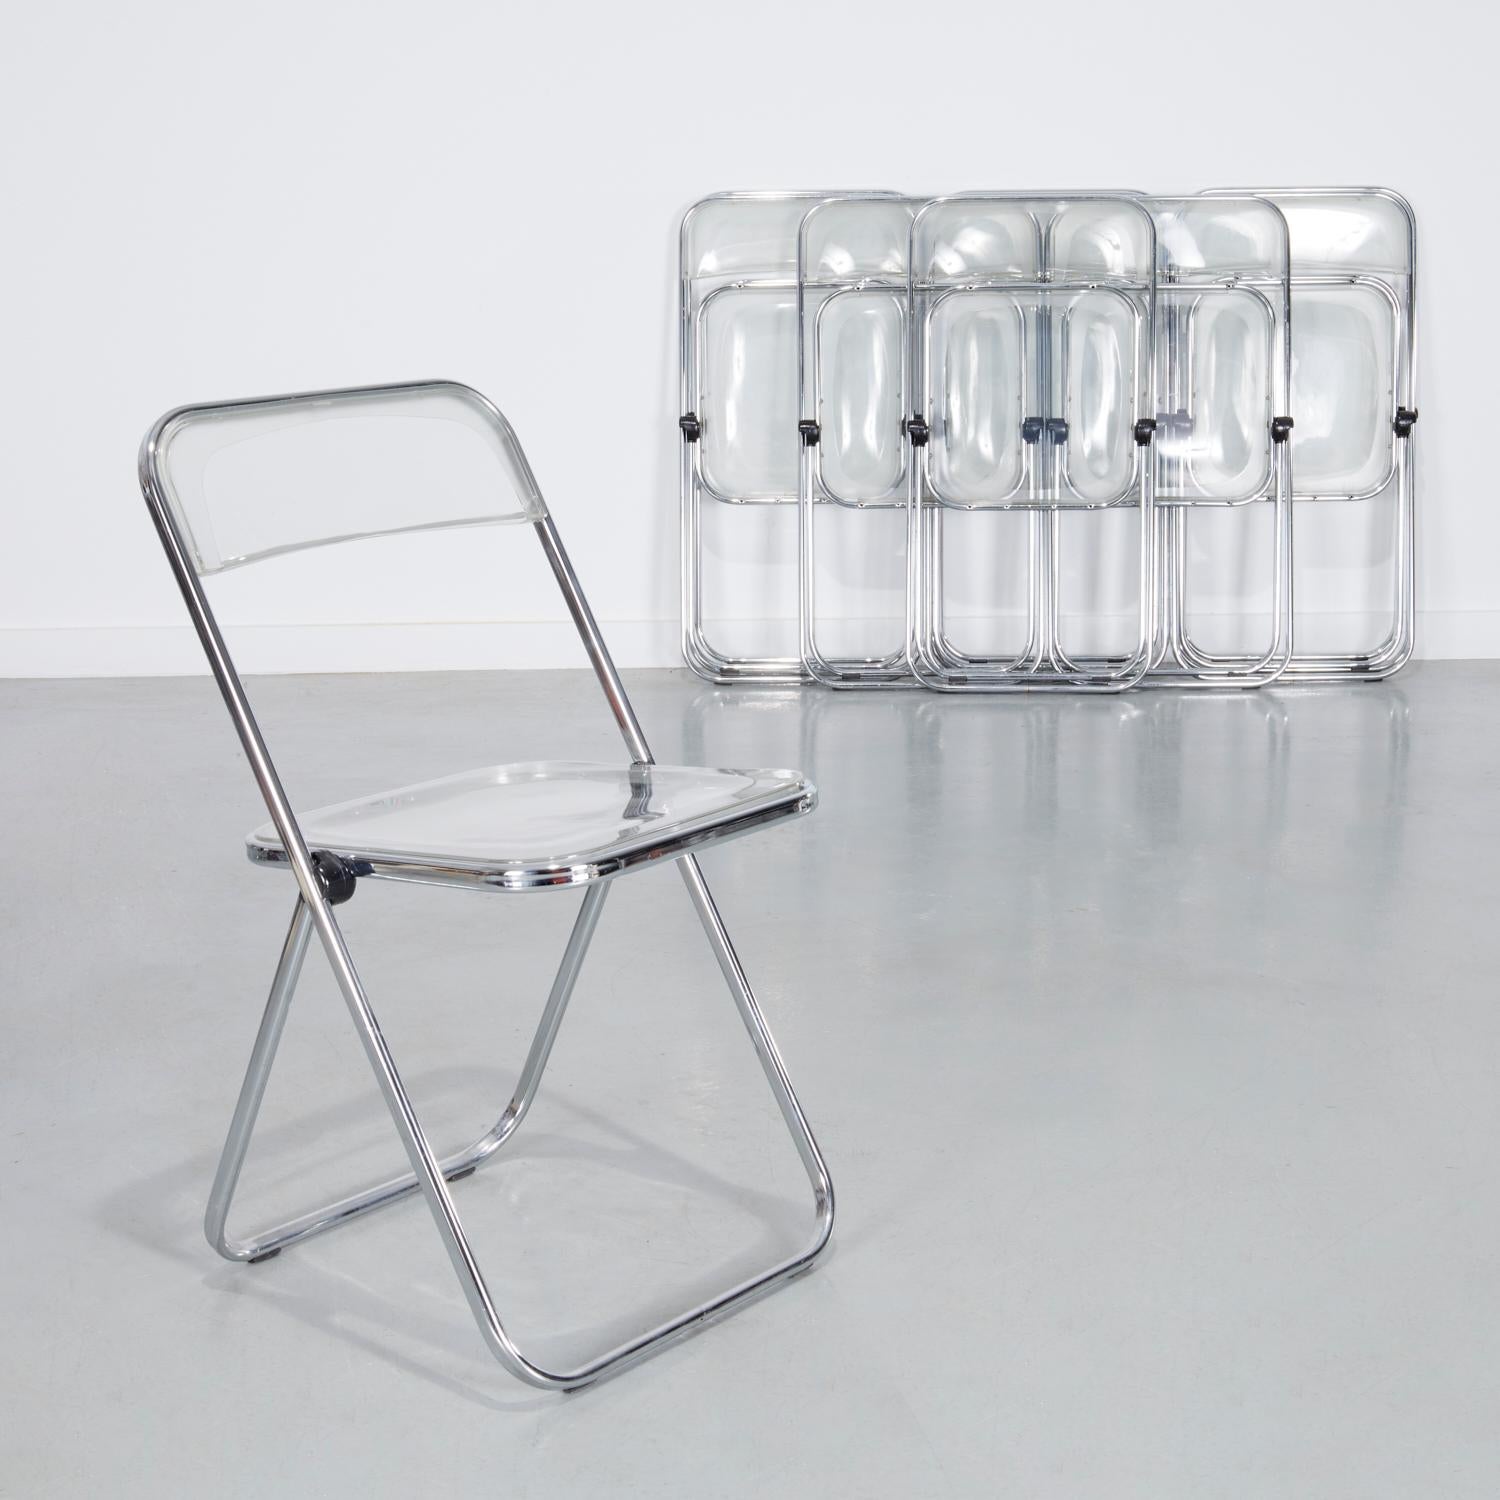 Modern 10 Italian Castelli Plea Style Clear Acrylic and Chrome Folding Chairs by Talin